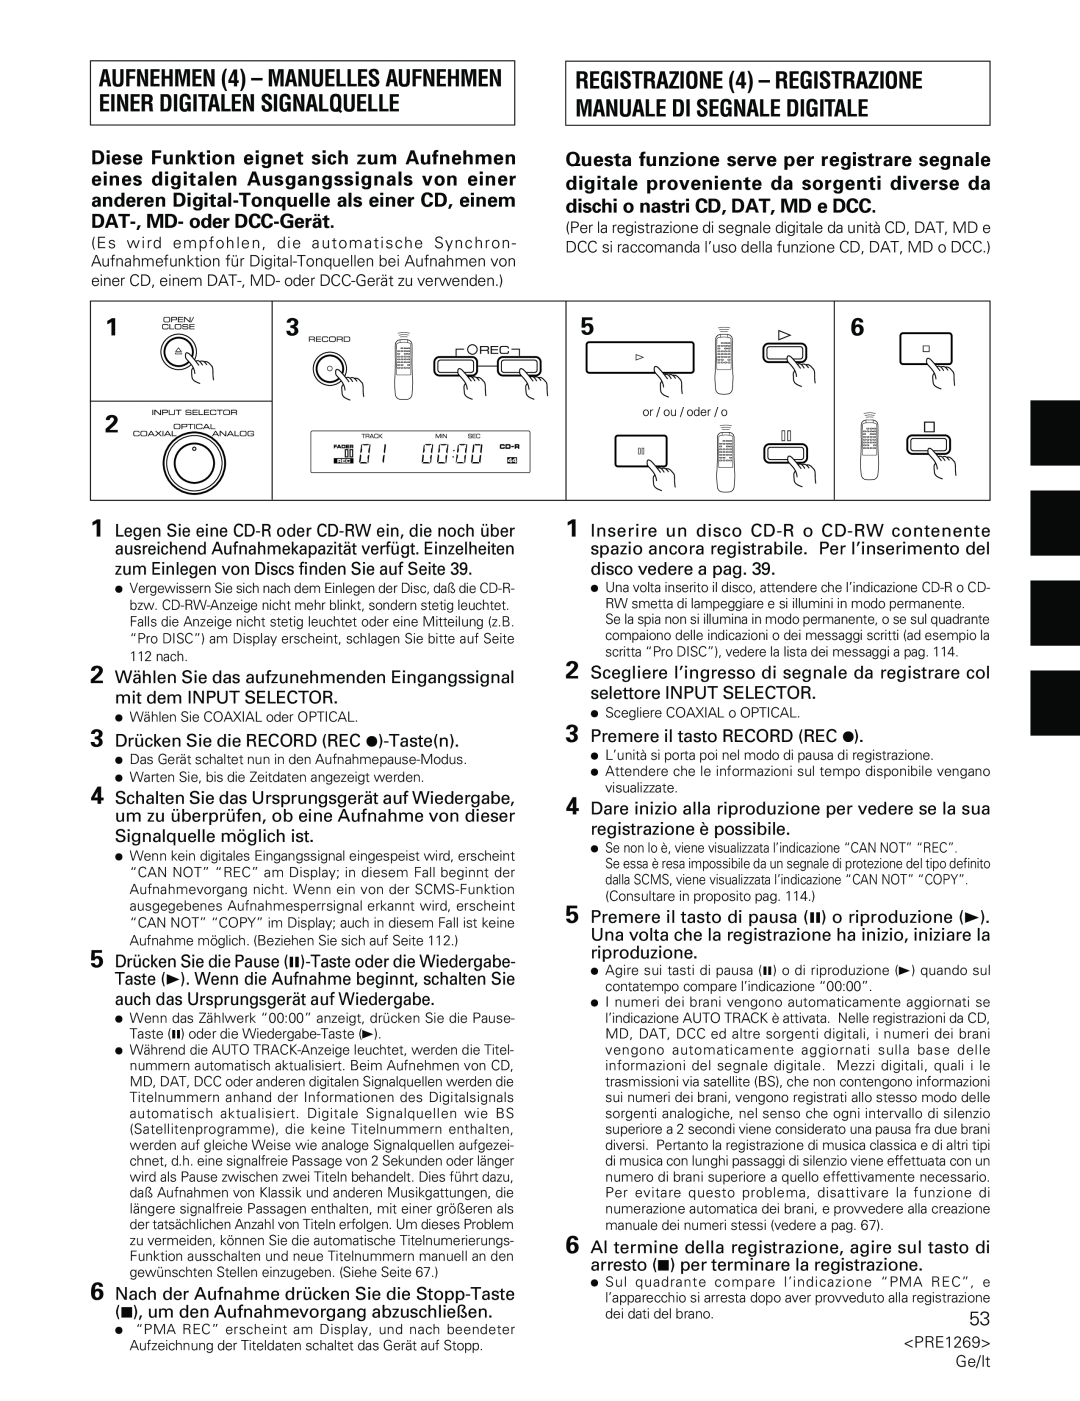 Pioneer PDR-555RW operating instructions zum Einlegen von Discs finden Sie auf Seite 